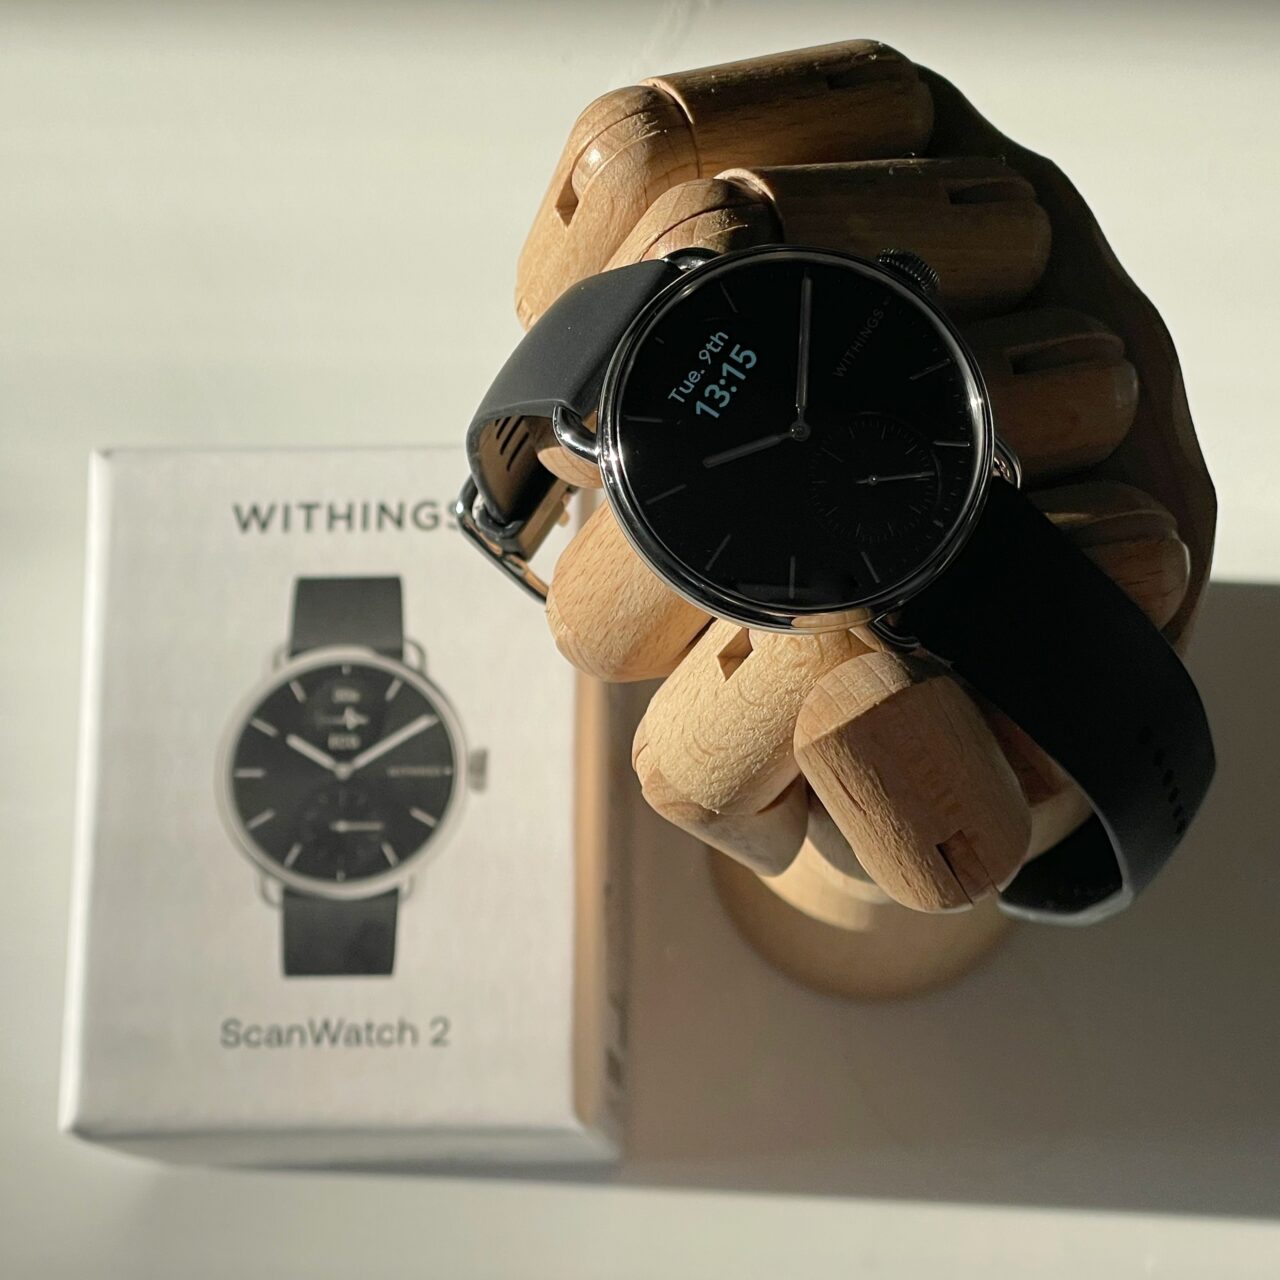 Czarny zegarek Withings ScanWatch na drewnianej dłoni manekina, z pudełkiem produktu w tle.